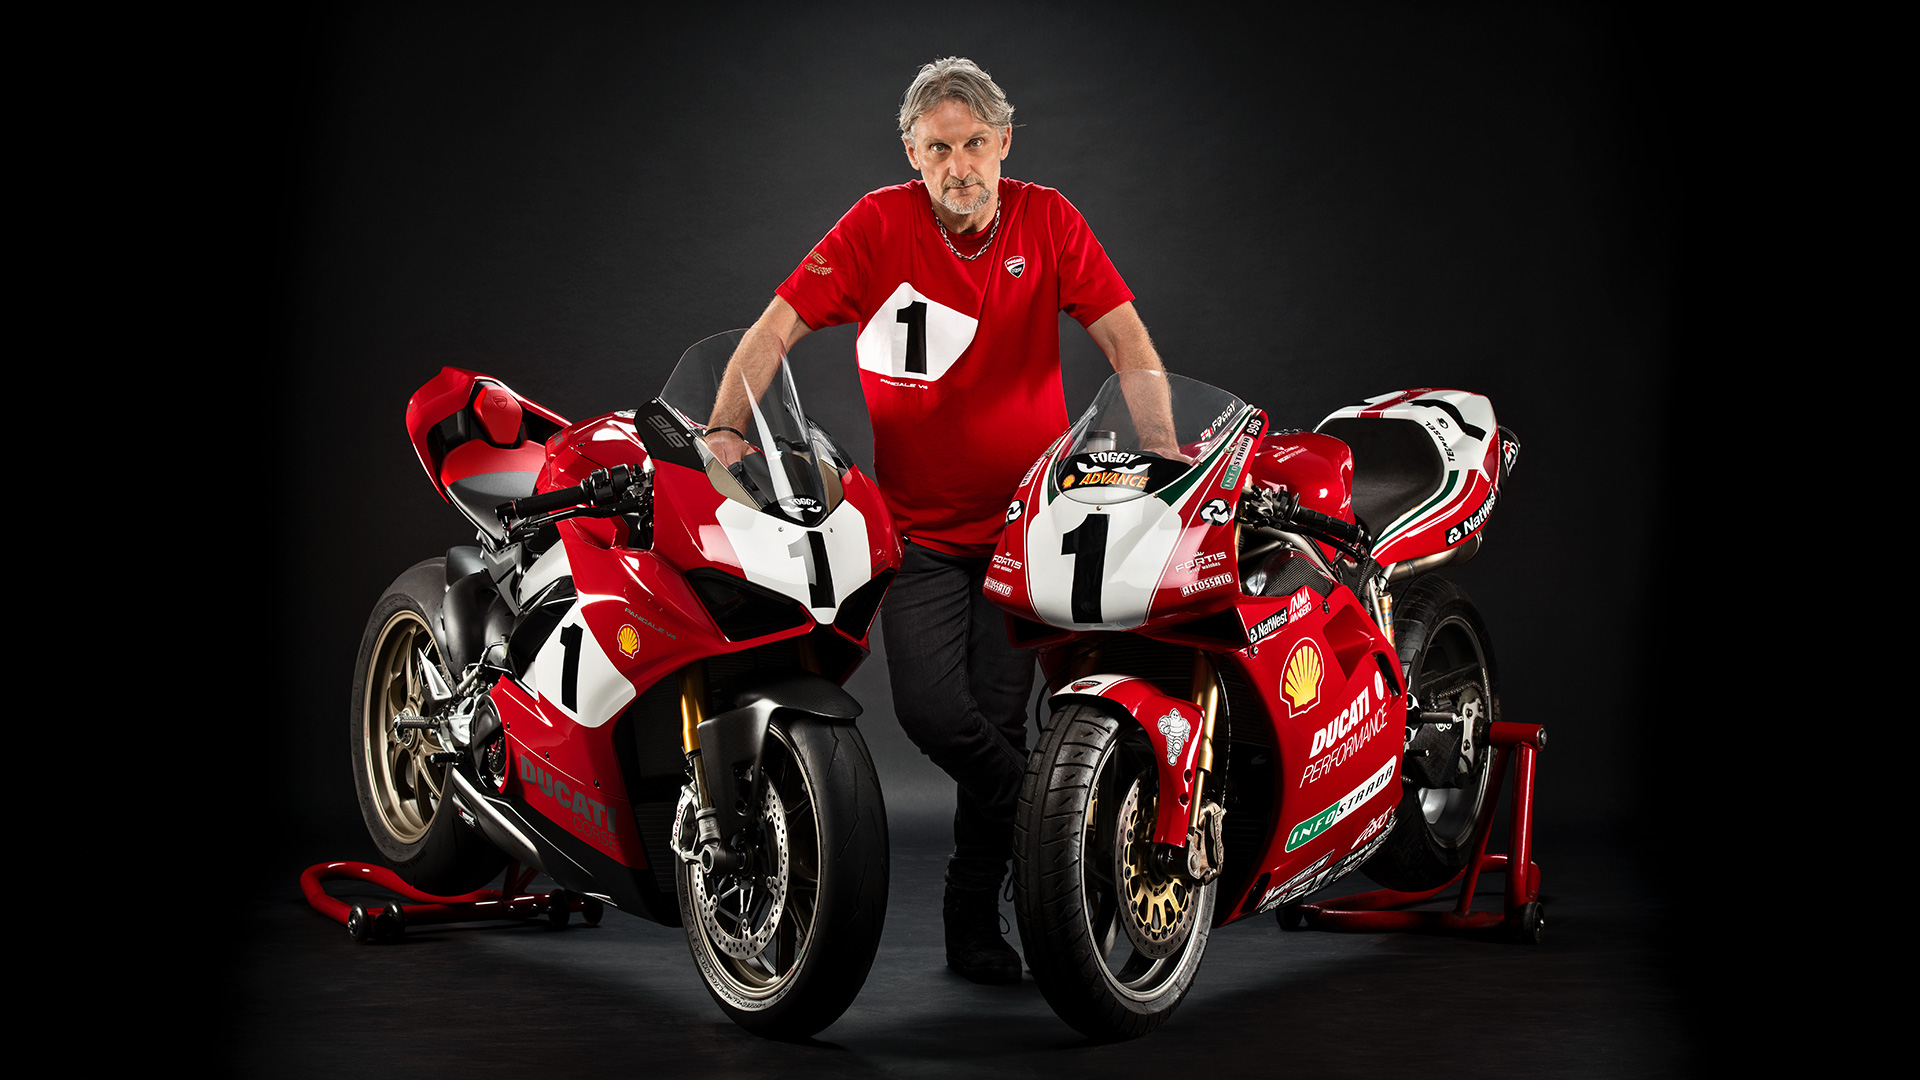 Siêu phẩm Panigale V4 kỷ niệm 25 năm của Ducati chính thức ra mắt, giá hơn 47,000 USD và chỉ bán 500 chiếc